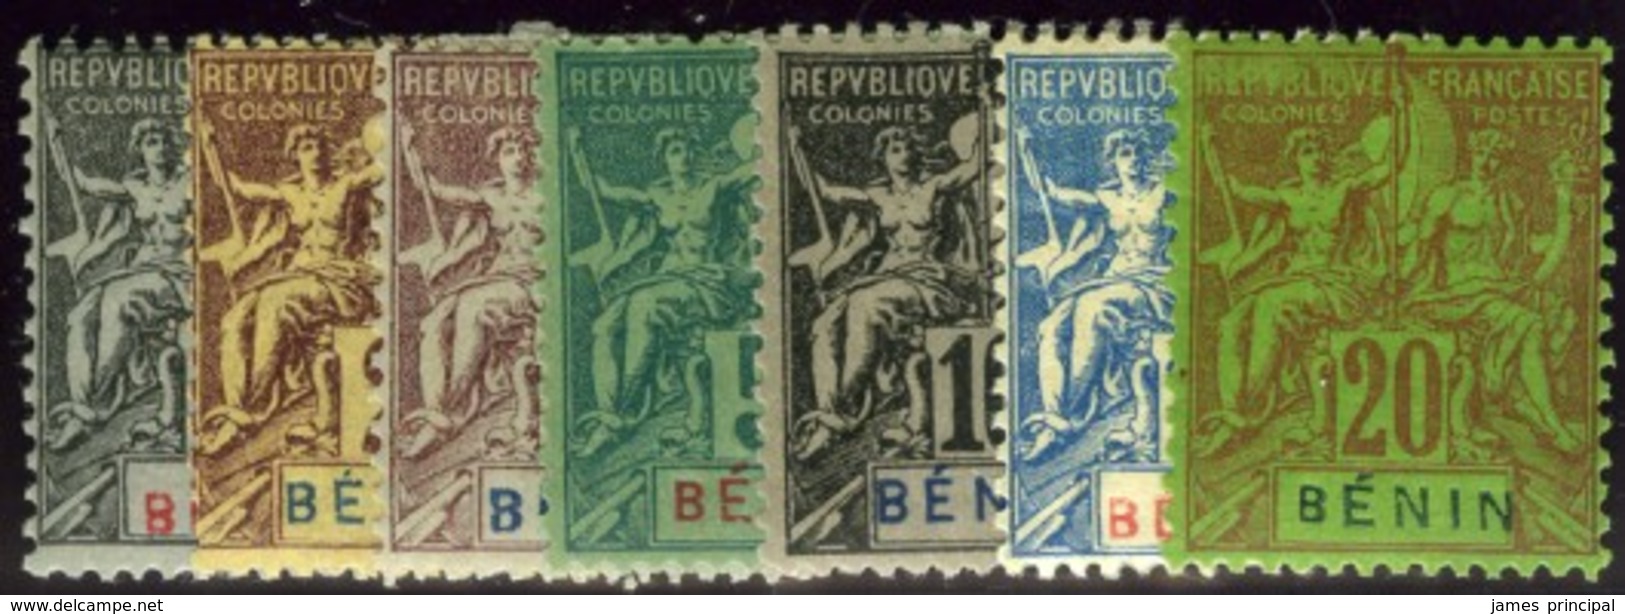 Benin. Sc #33-39. Mint. OG. - Unused Stamps